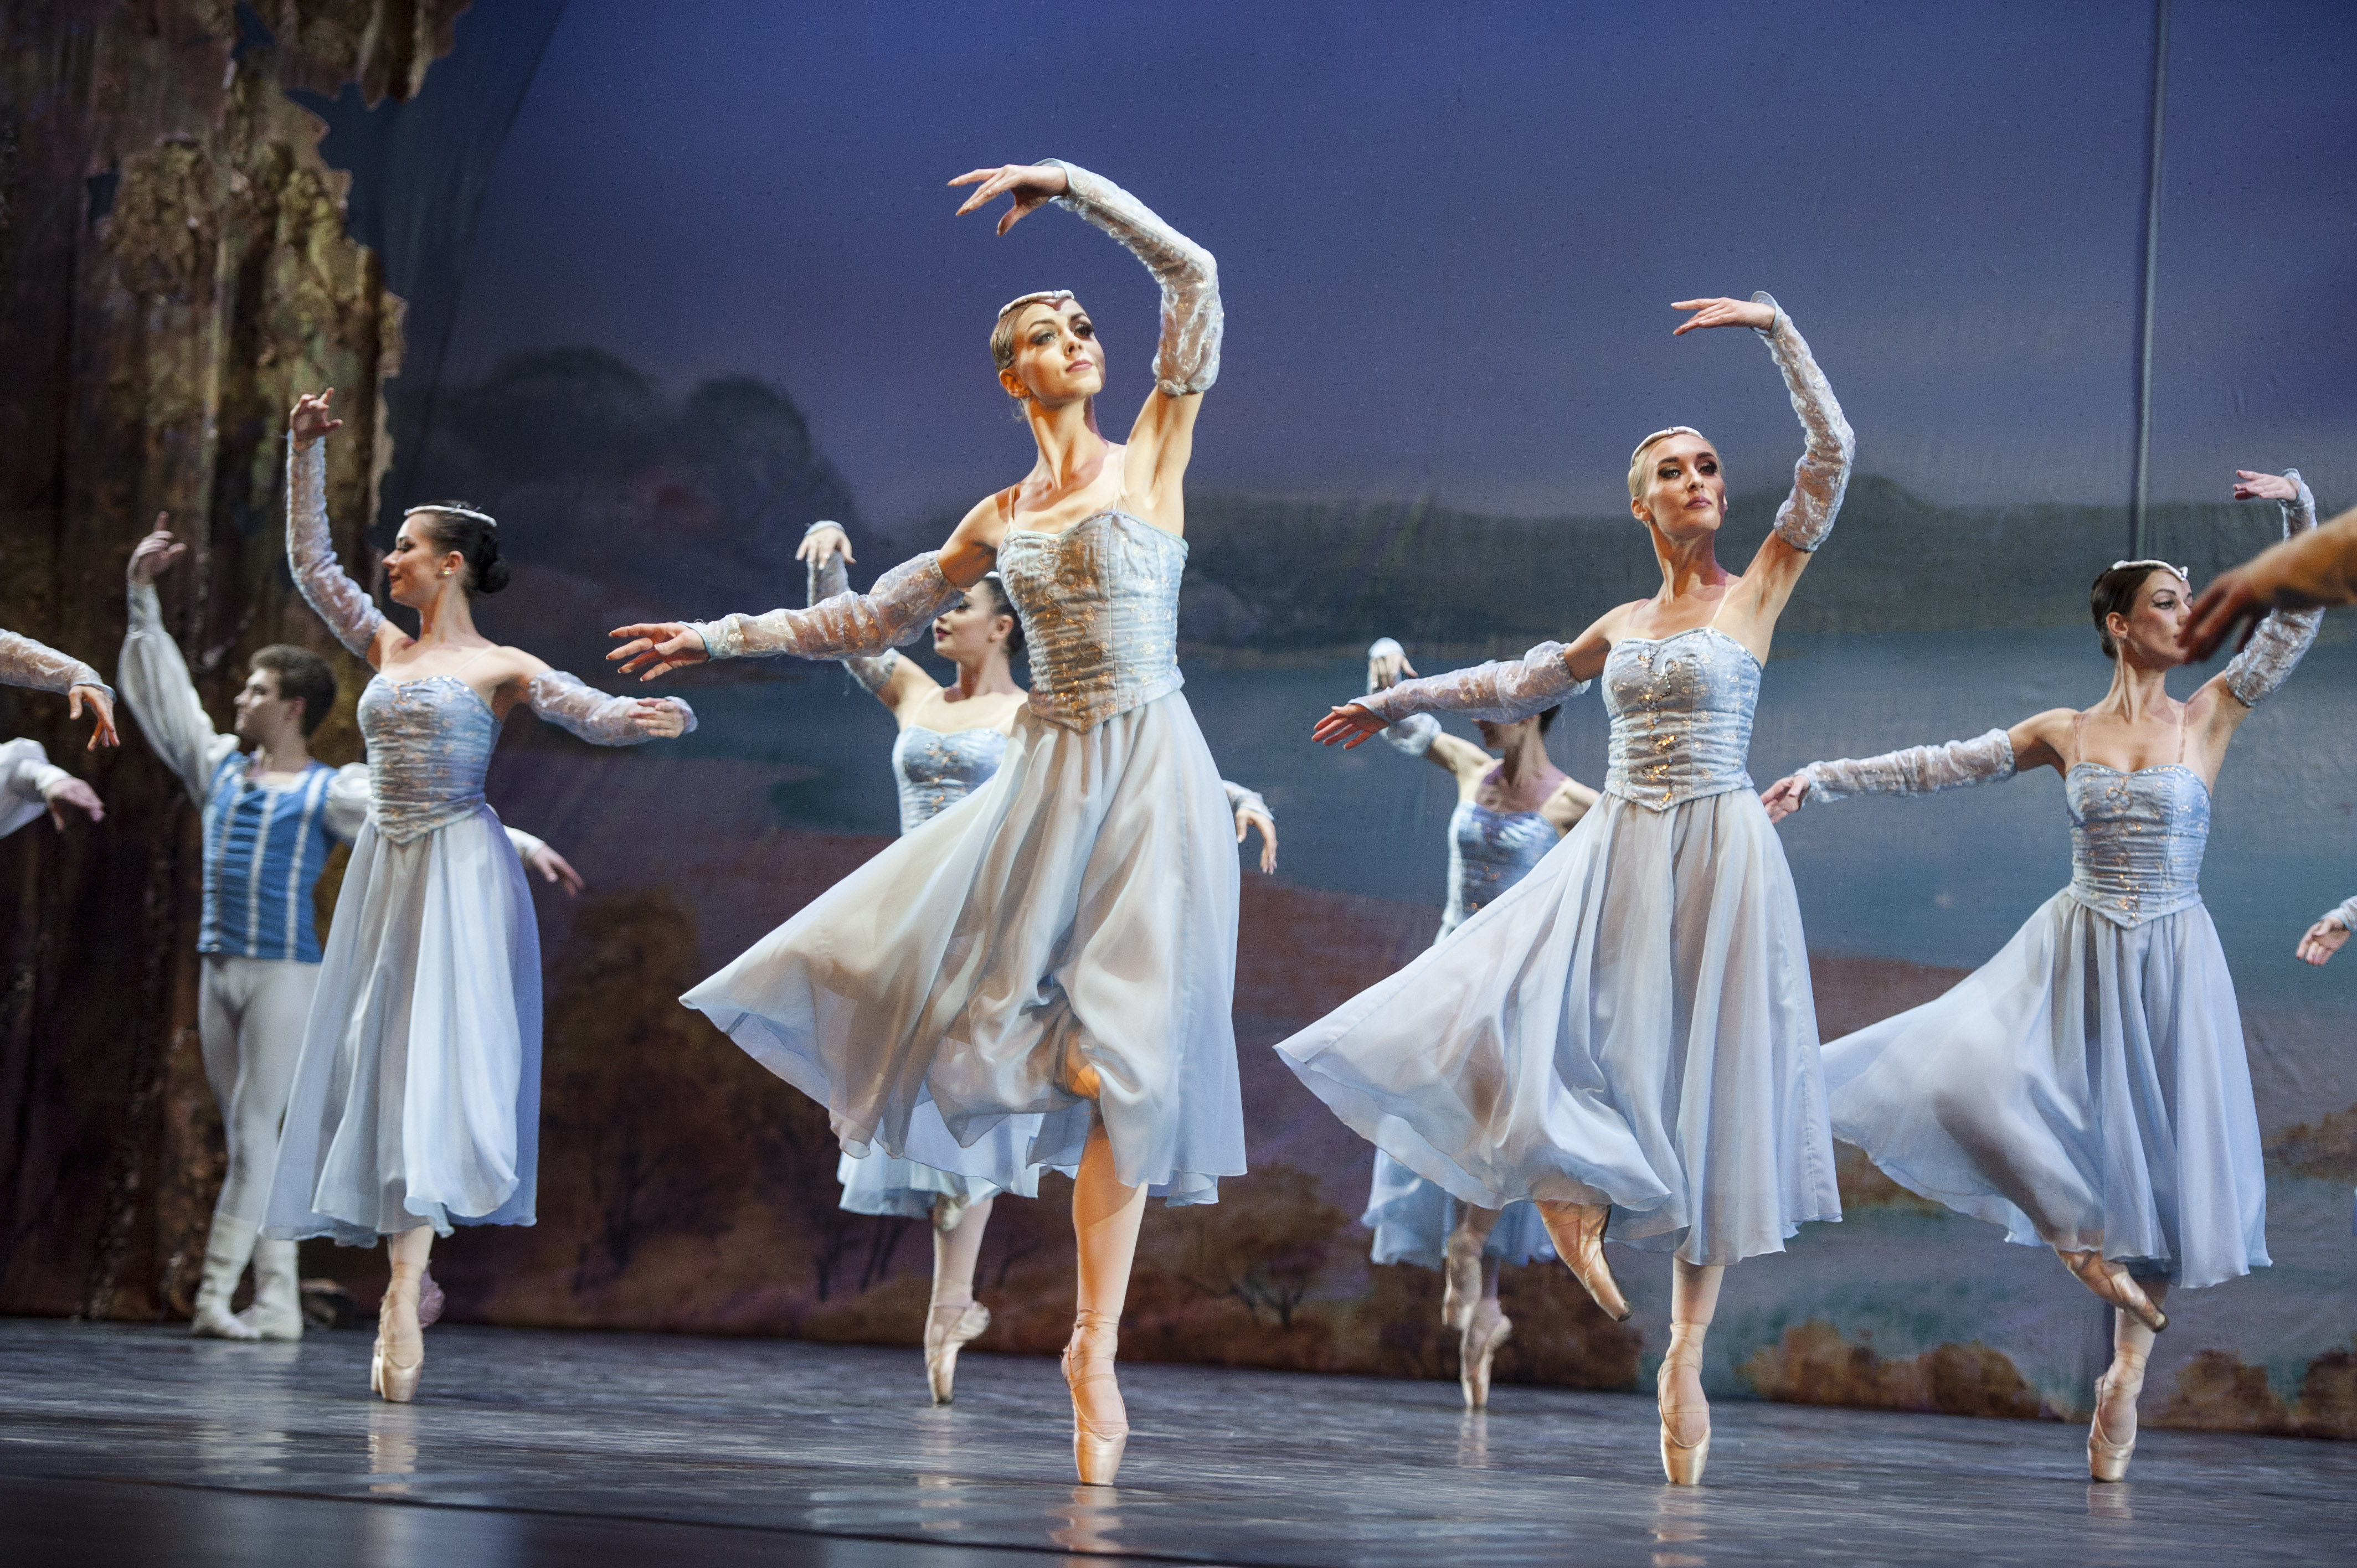 俄罗斯柴可夫斯基芭蕾舞团《天鹅湖》在合肥起舞